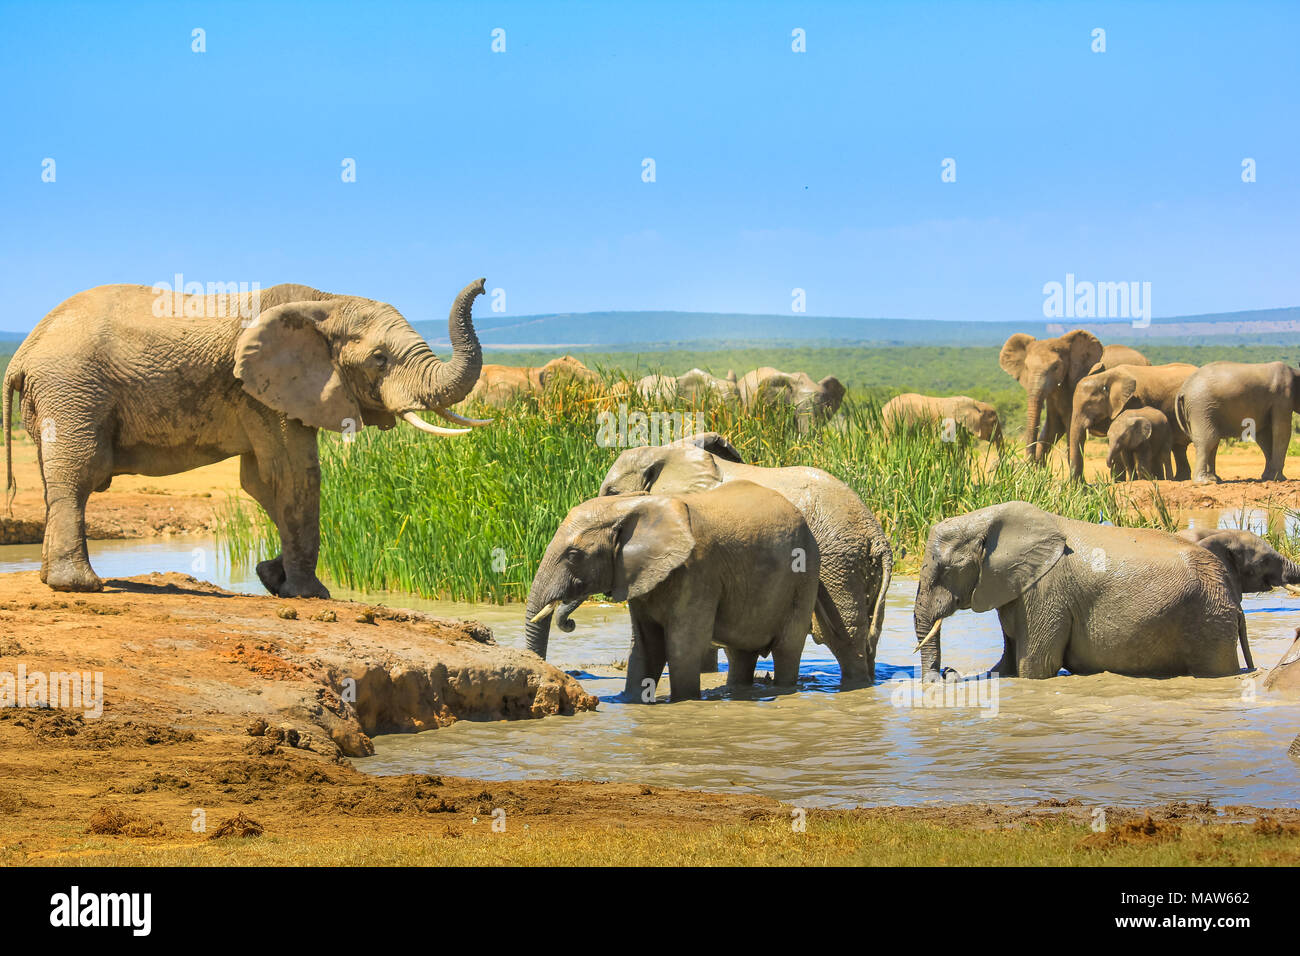 Gli elefanti africani nei pressi di una piscina di grandi dimensioni e altri all'interno dell'acqua che si raffreddano con fango. Addo Elephant National Park, Capo orientale, Sud Africa. Durante la stagione estiva in una giornata di sole. Foto Stock